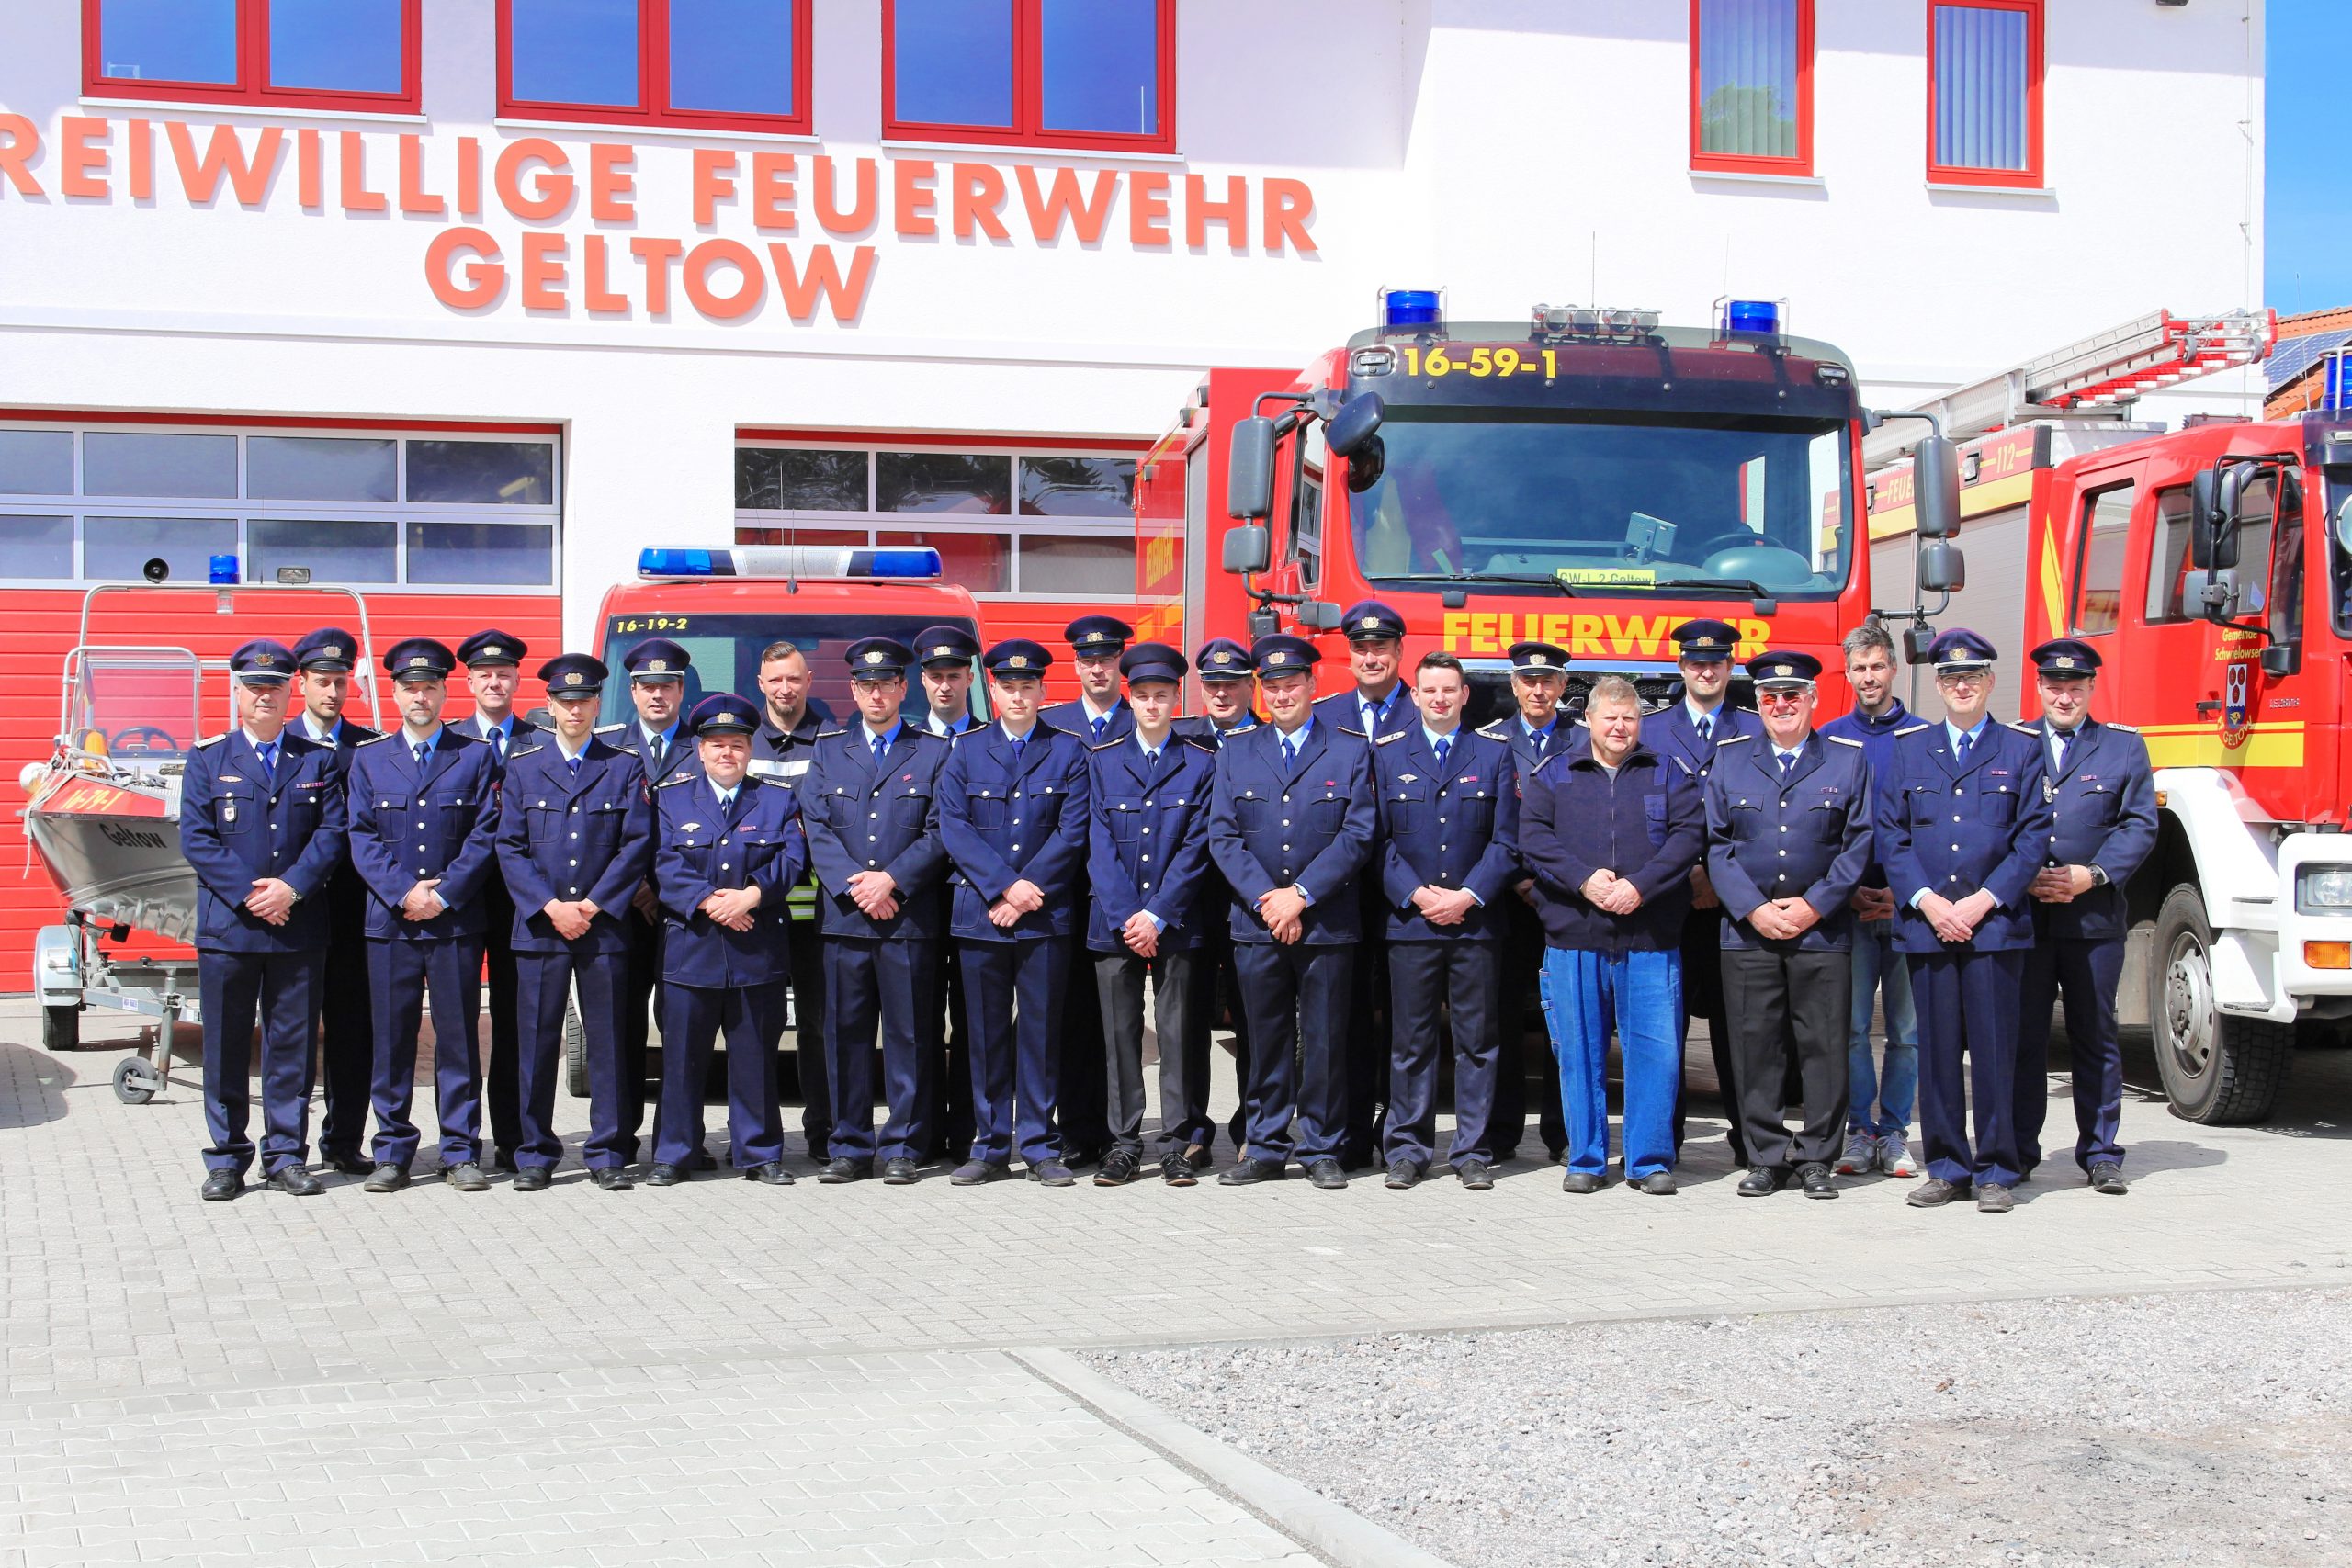 Gruppenfoto aller Kameraden der Feuerwehr, in Uniform vor den Fahrzeugen.